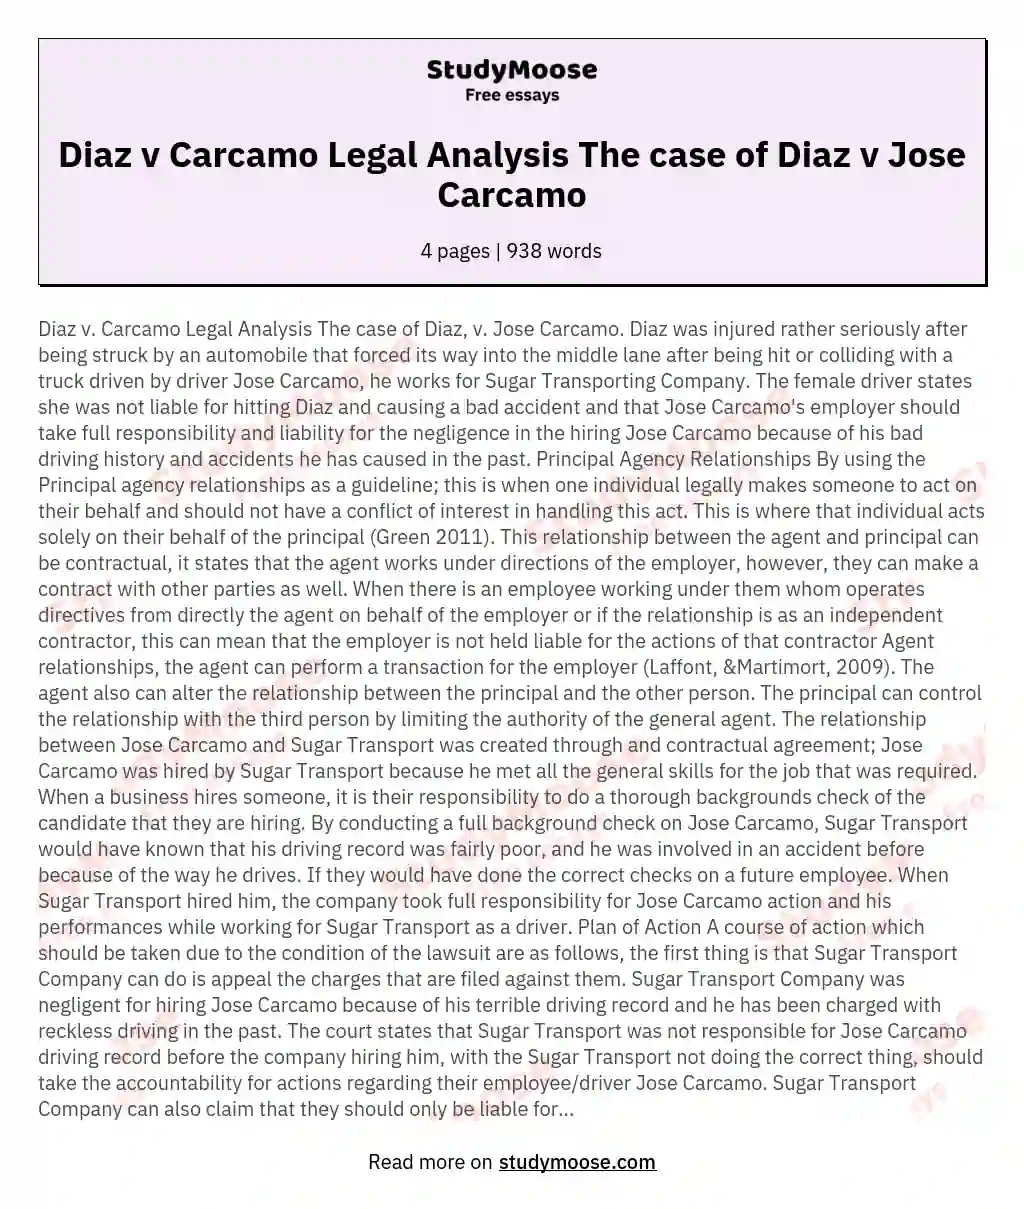 Diaz v Carcamo Legal Analysis The case of Diaz v Jose Carcamo